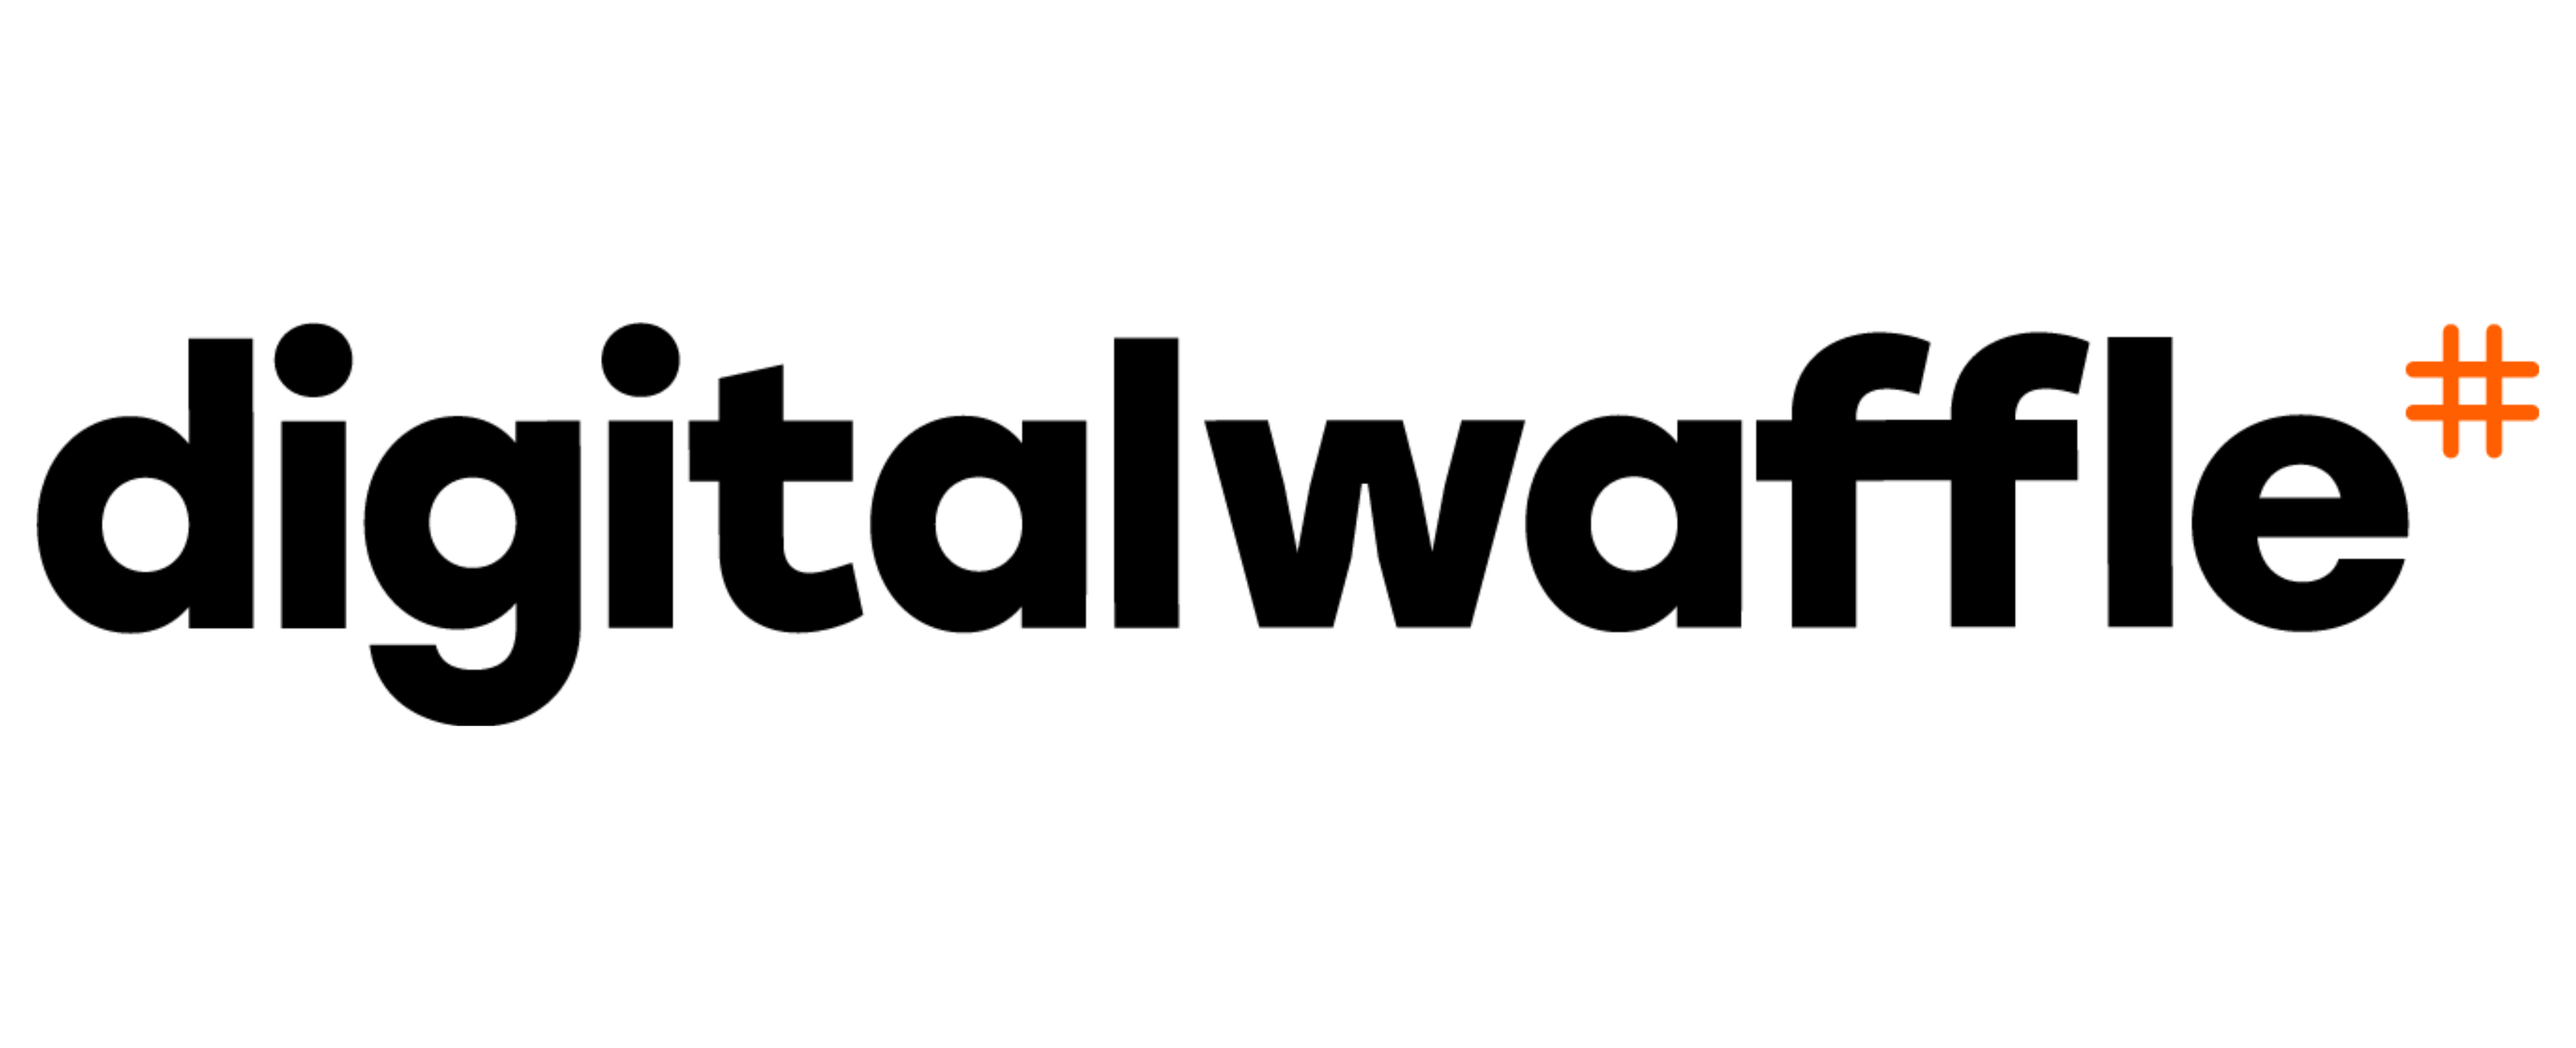 Digital Waffle Logo - Black